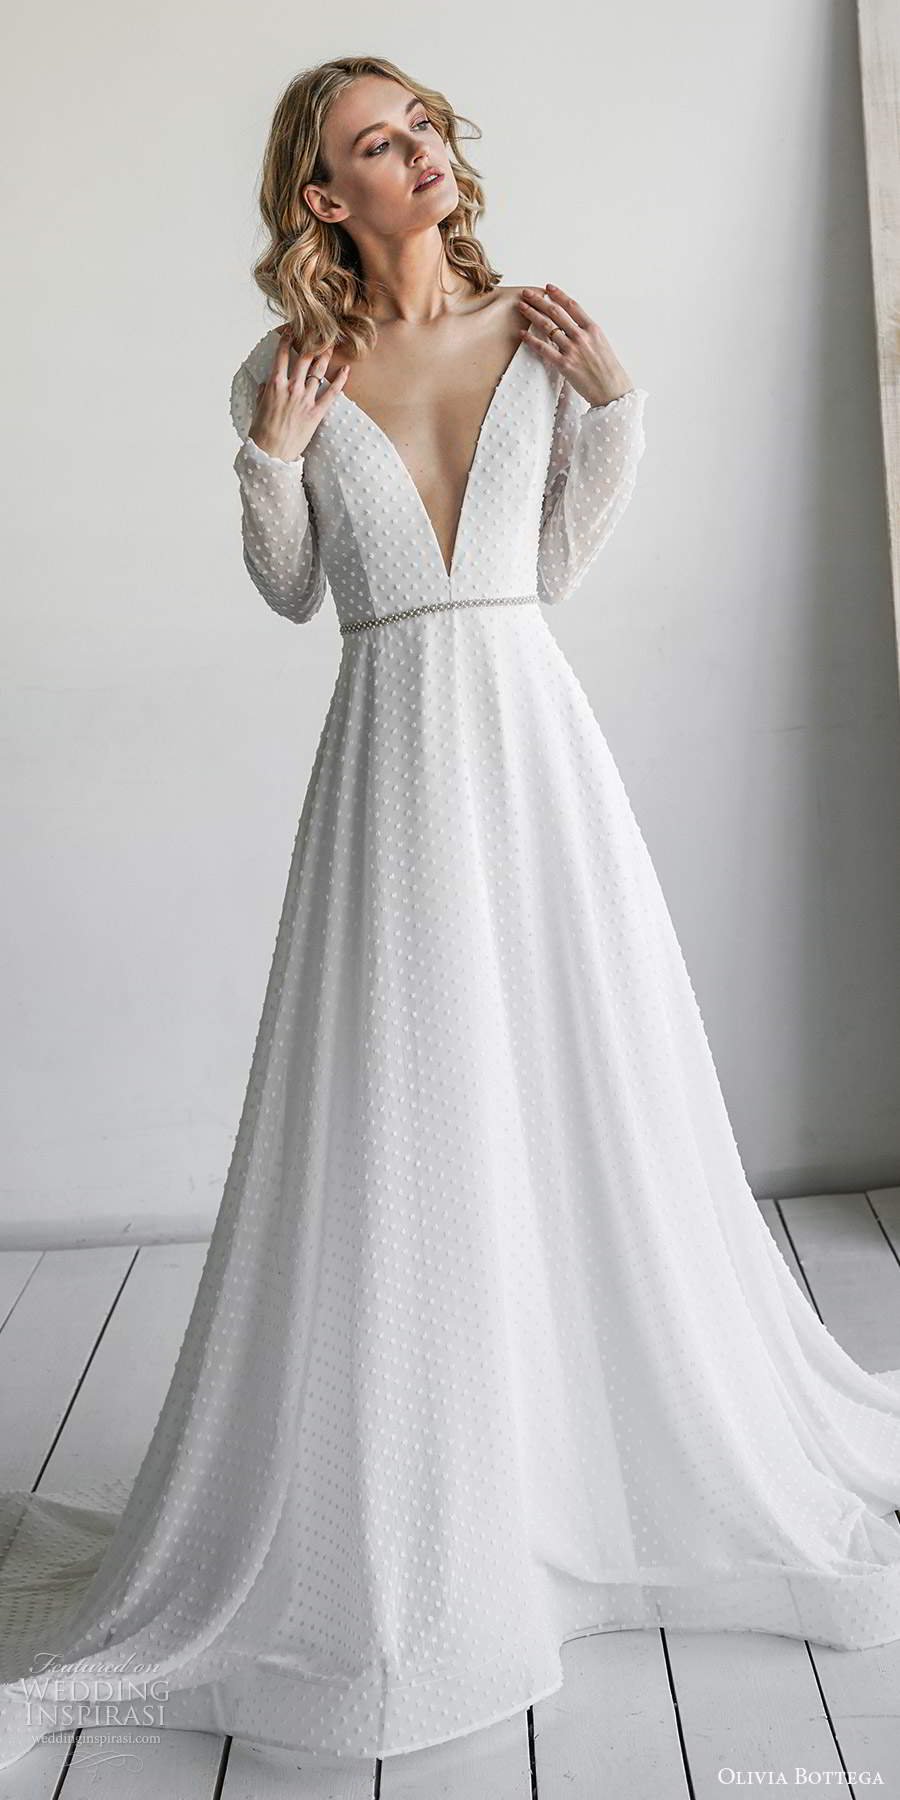 Оливия Боттега Свадебные платья